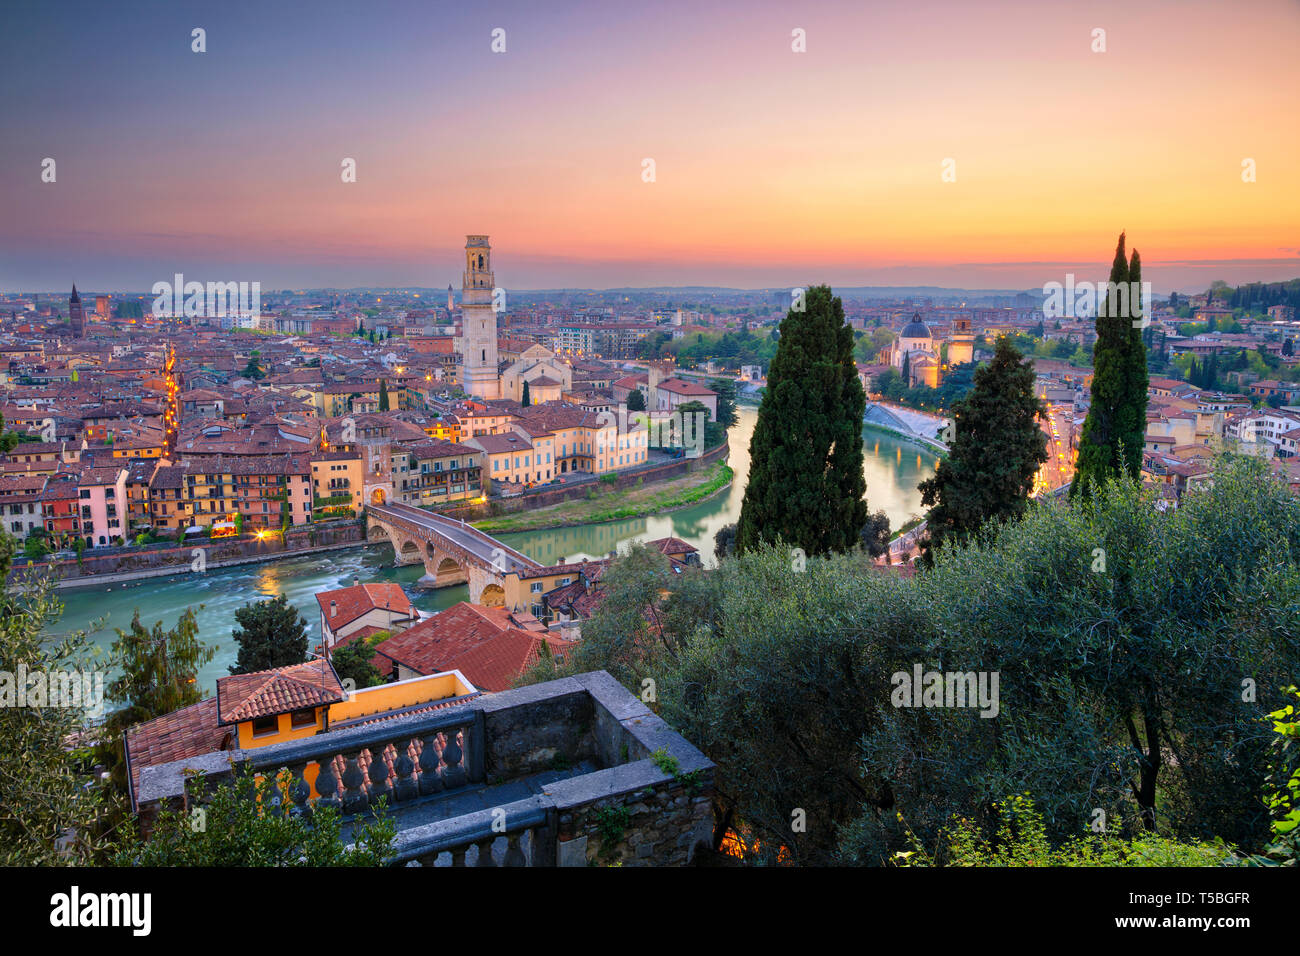 Vérone, Italie. Cityscape image de Vérone, Italie pendant le coucher du soleil. Banque D'Images